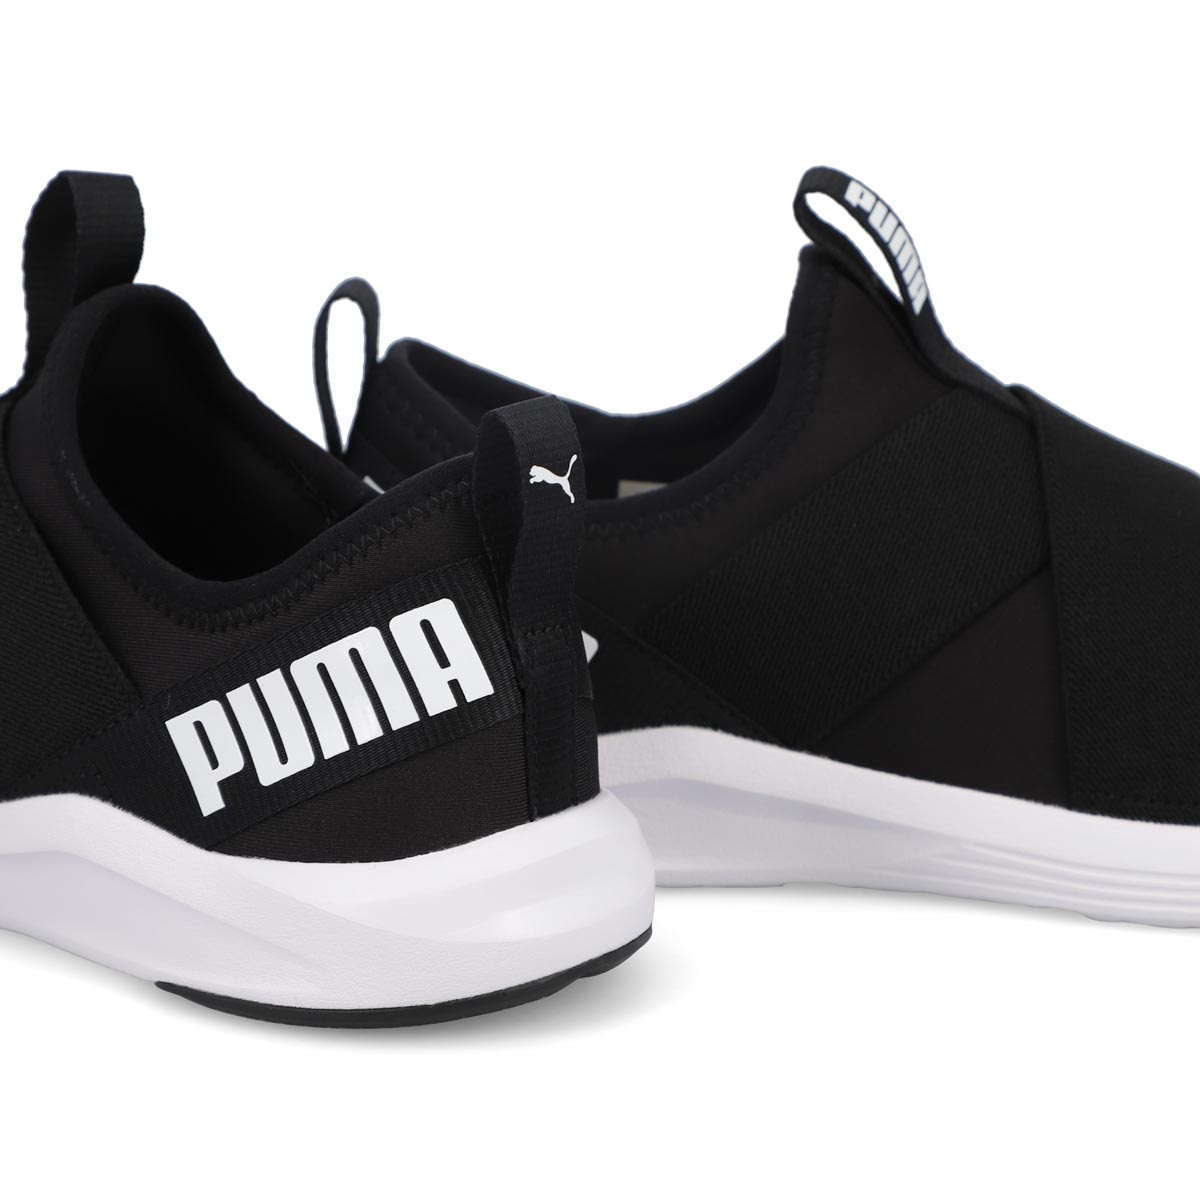 Women's Prowl Slip On Sneaker - Black/ White